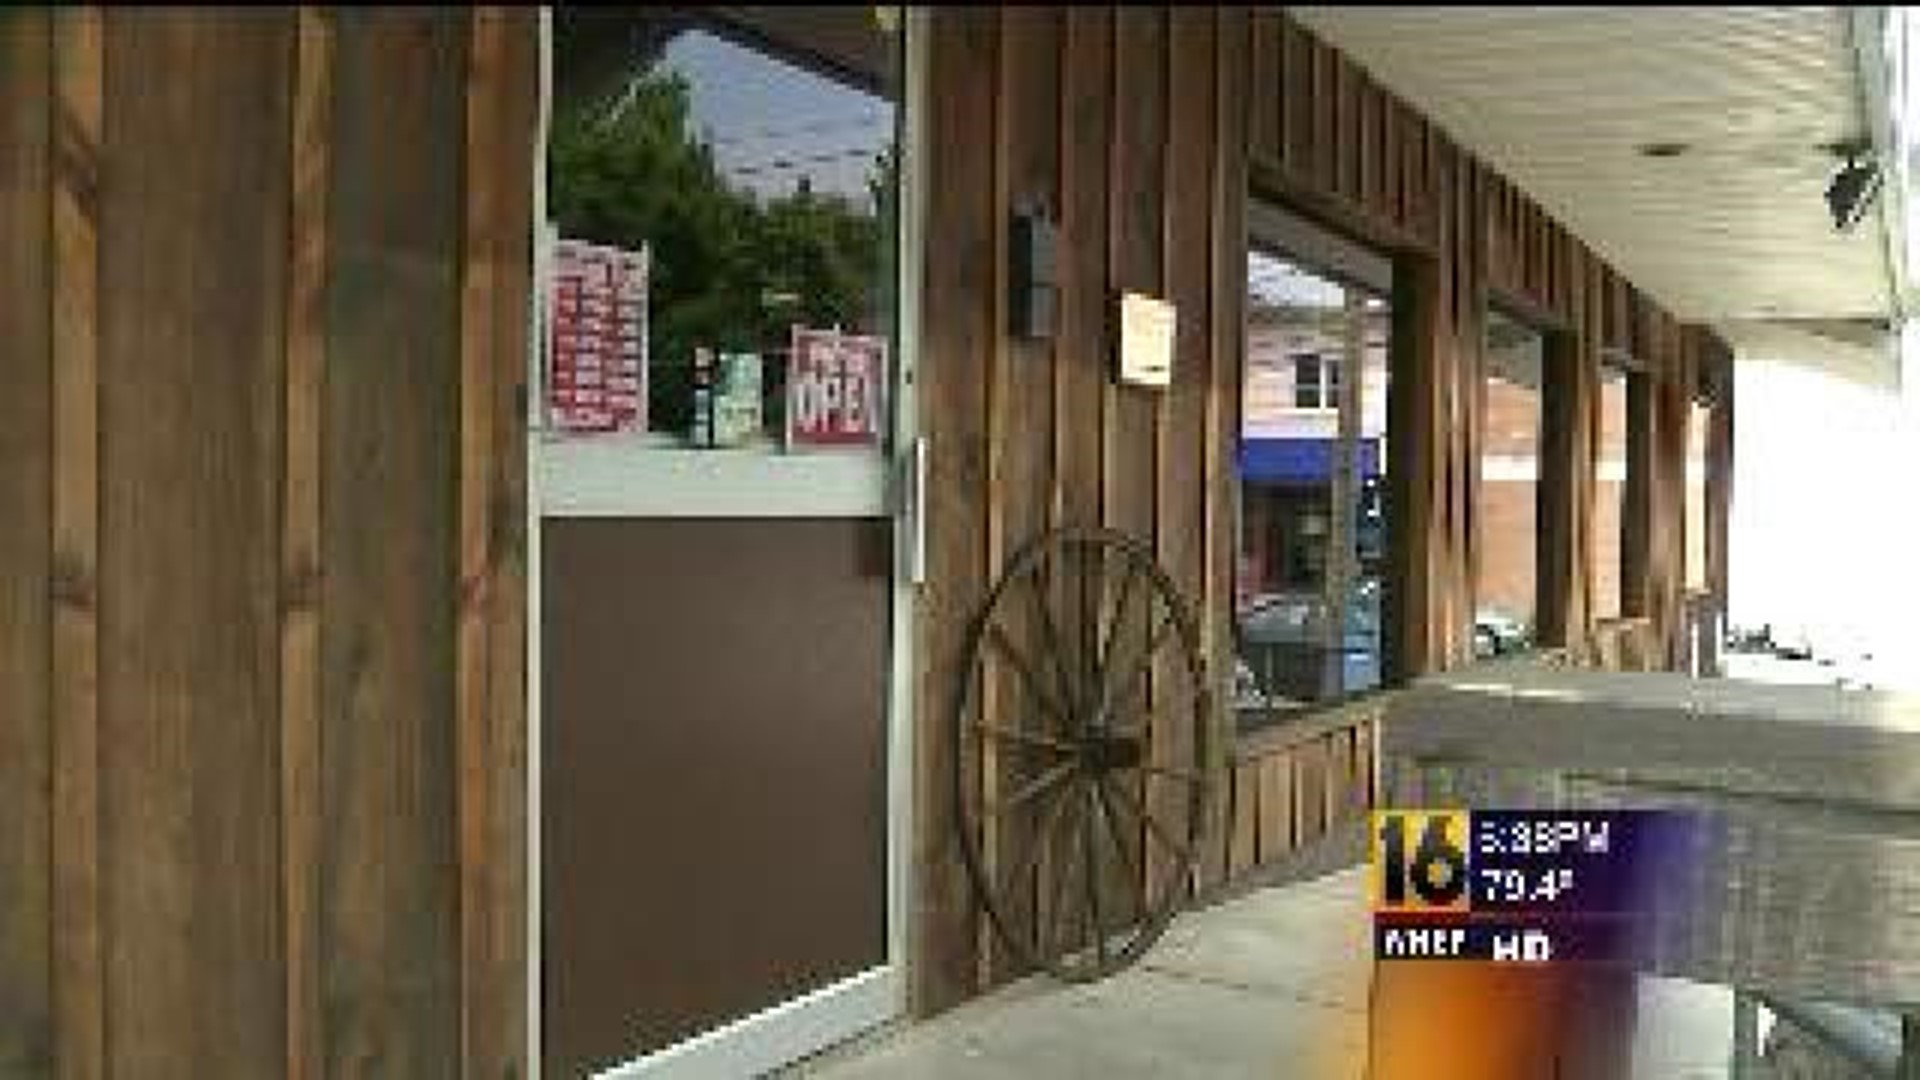 Restaurant Hit by September Floods Re-opens